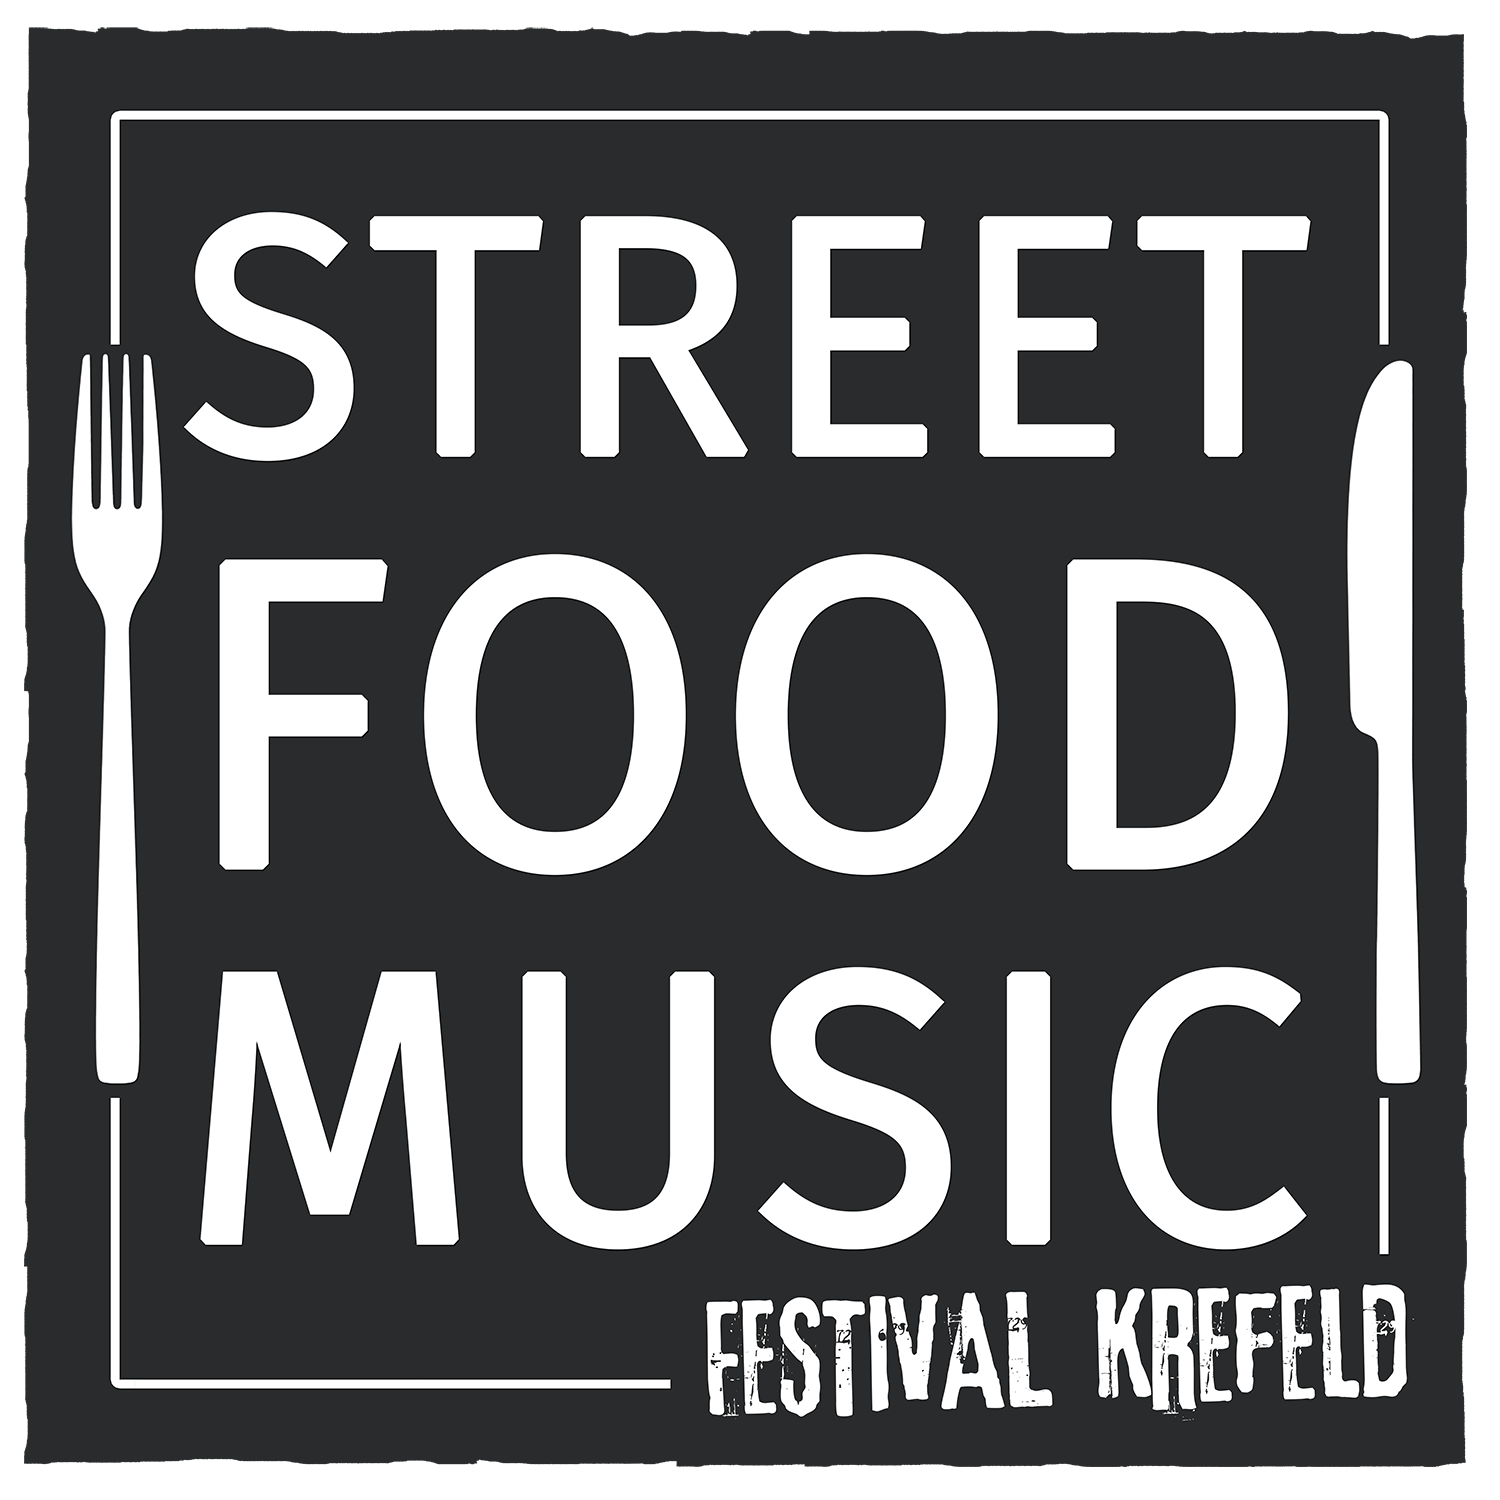 Street Food & Music Festival Krefeld